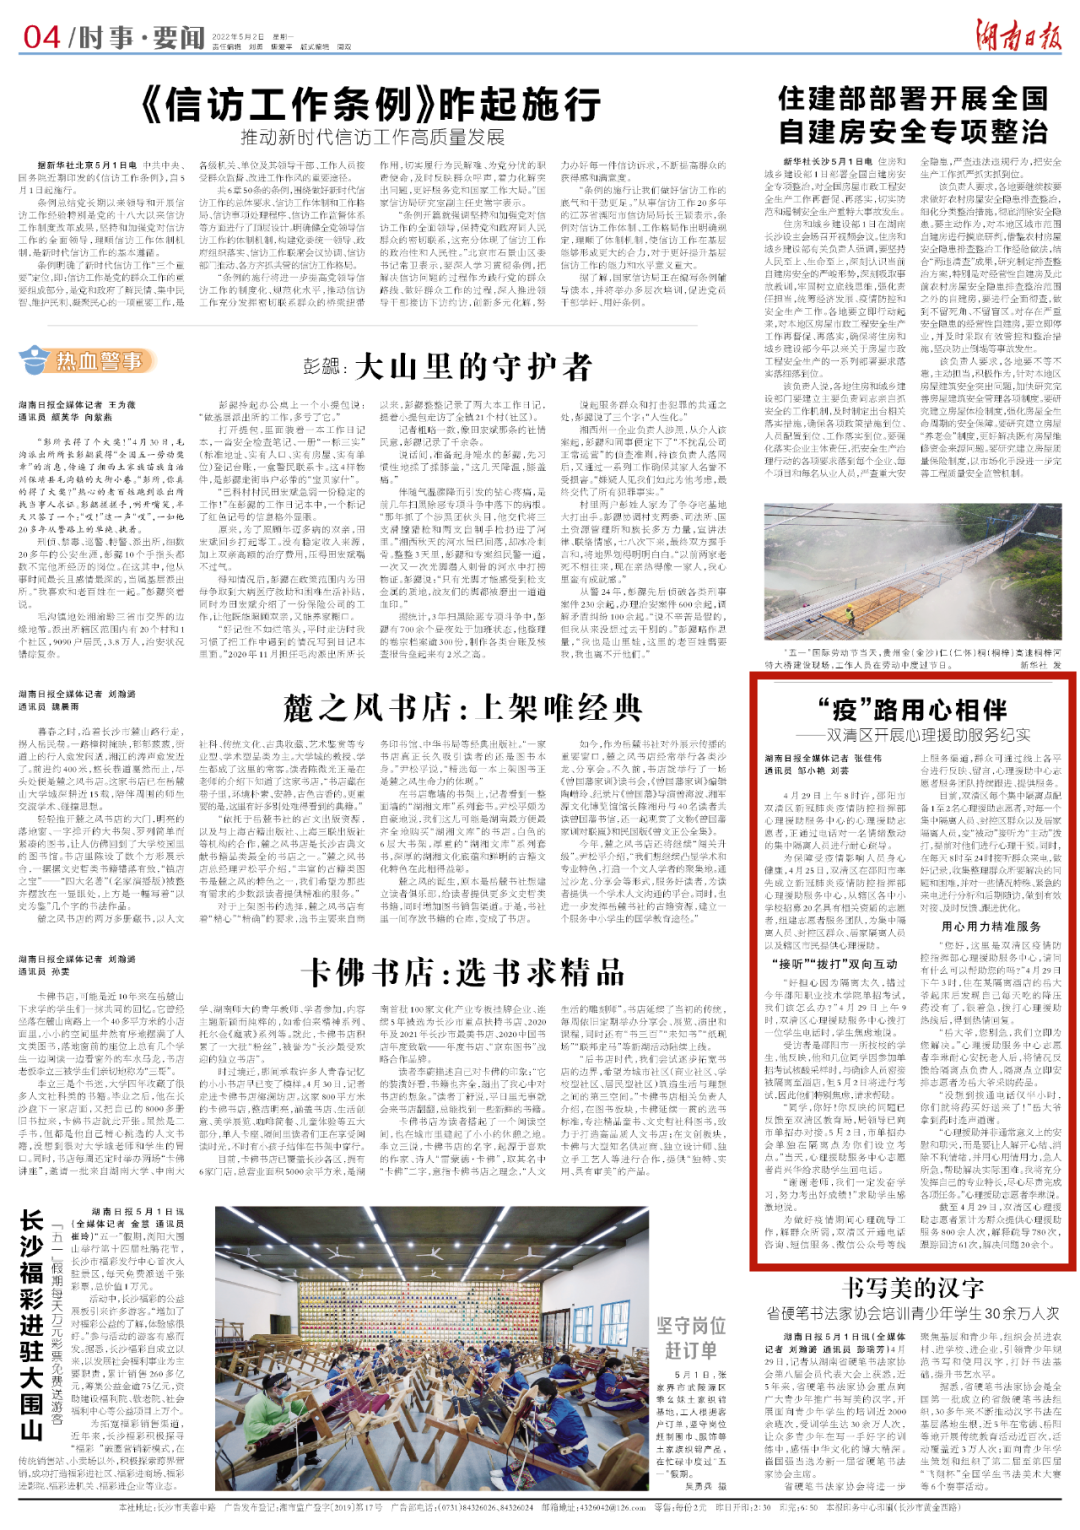 湖南日报丨“疫”路用心相伴——双清区开展心理援助服务纪实